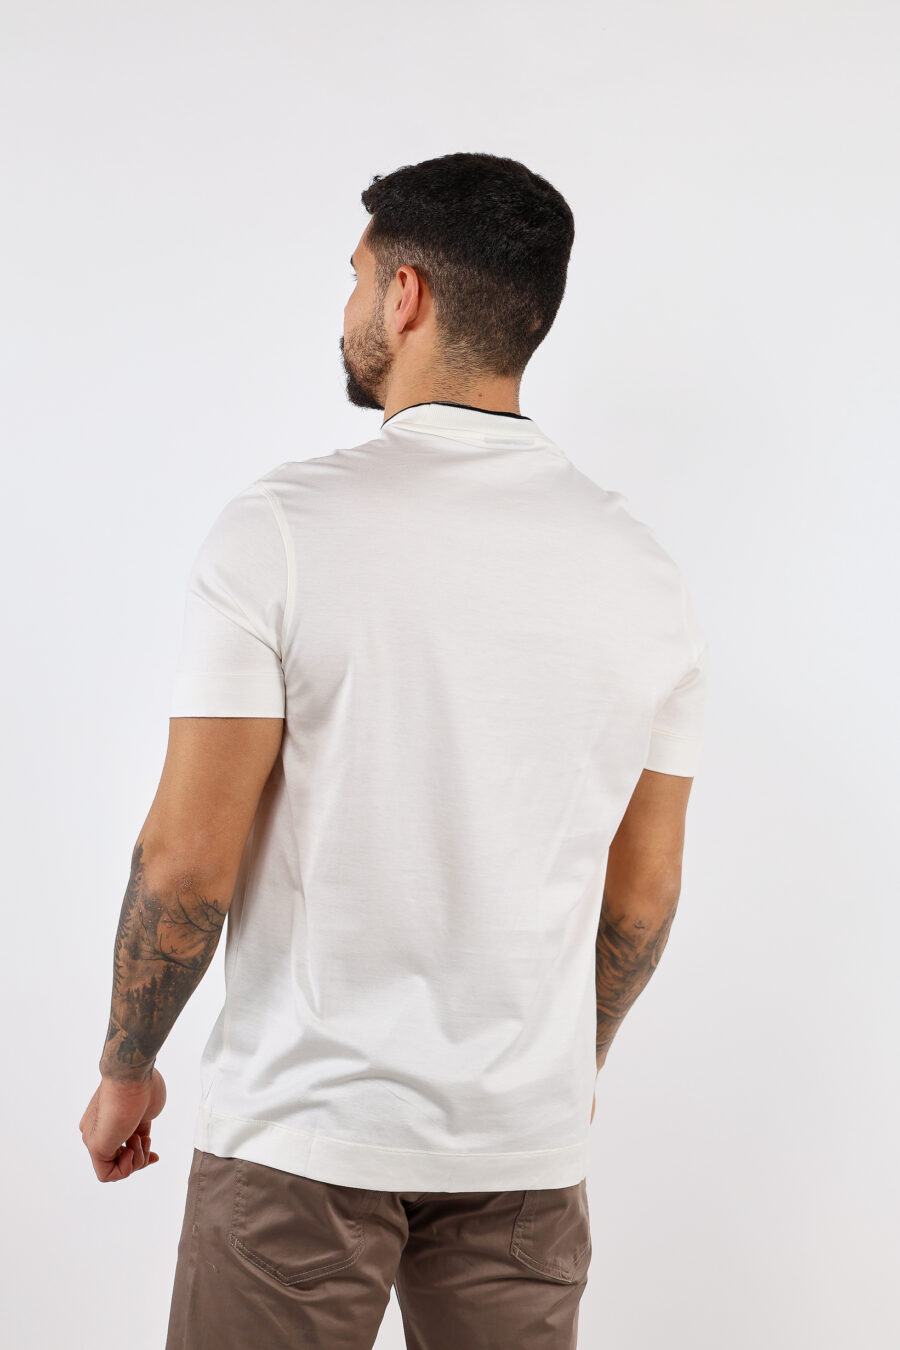 Cremefarbenes T-Shirt mit zentriertem Adler-Maxilogo - BLS Fashion 78 1